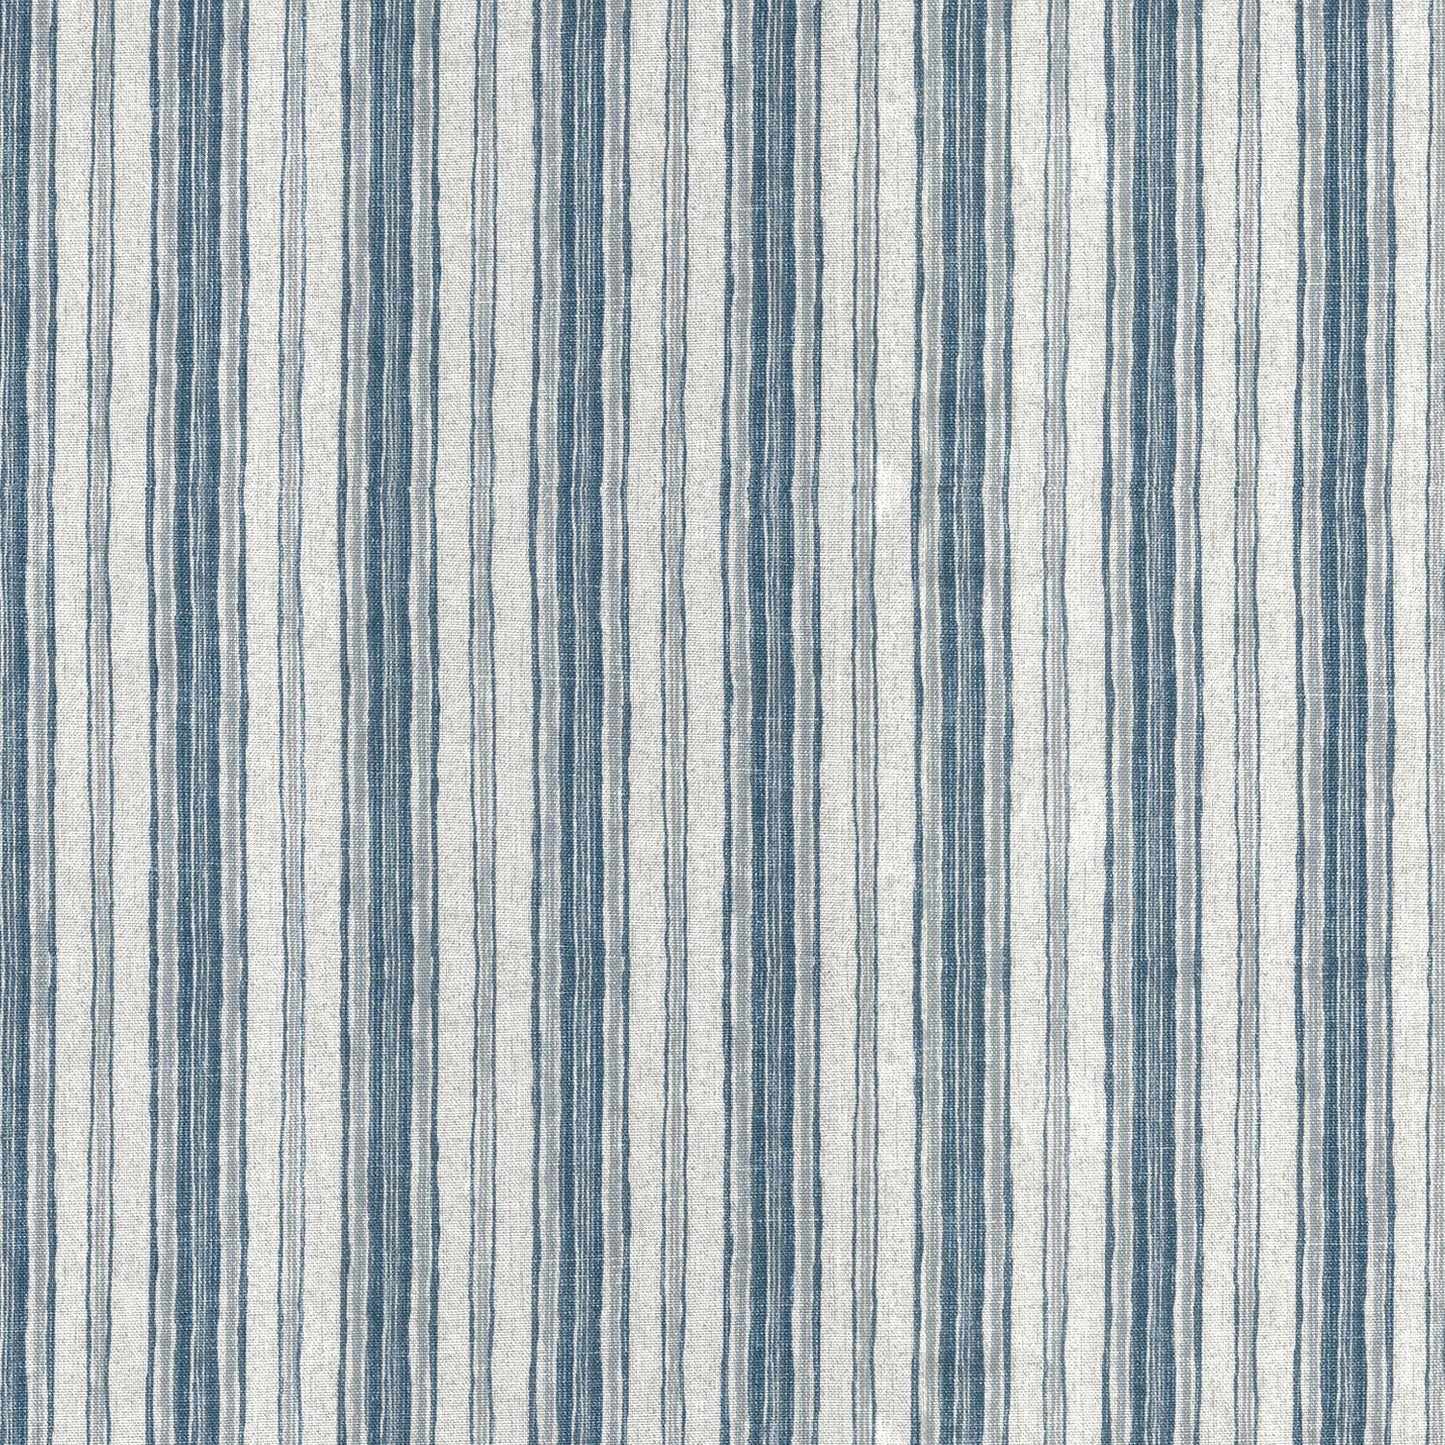 pinch pleated curtains in brunswick denim blue stripe